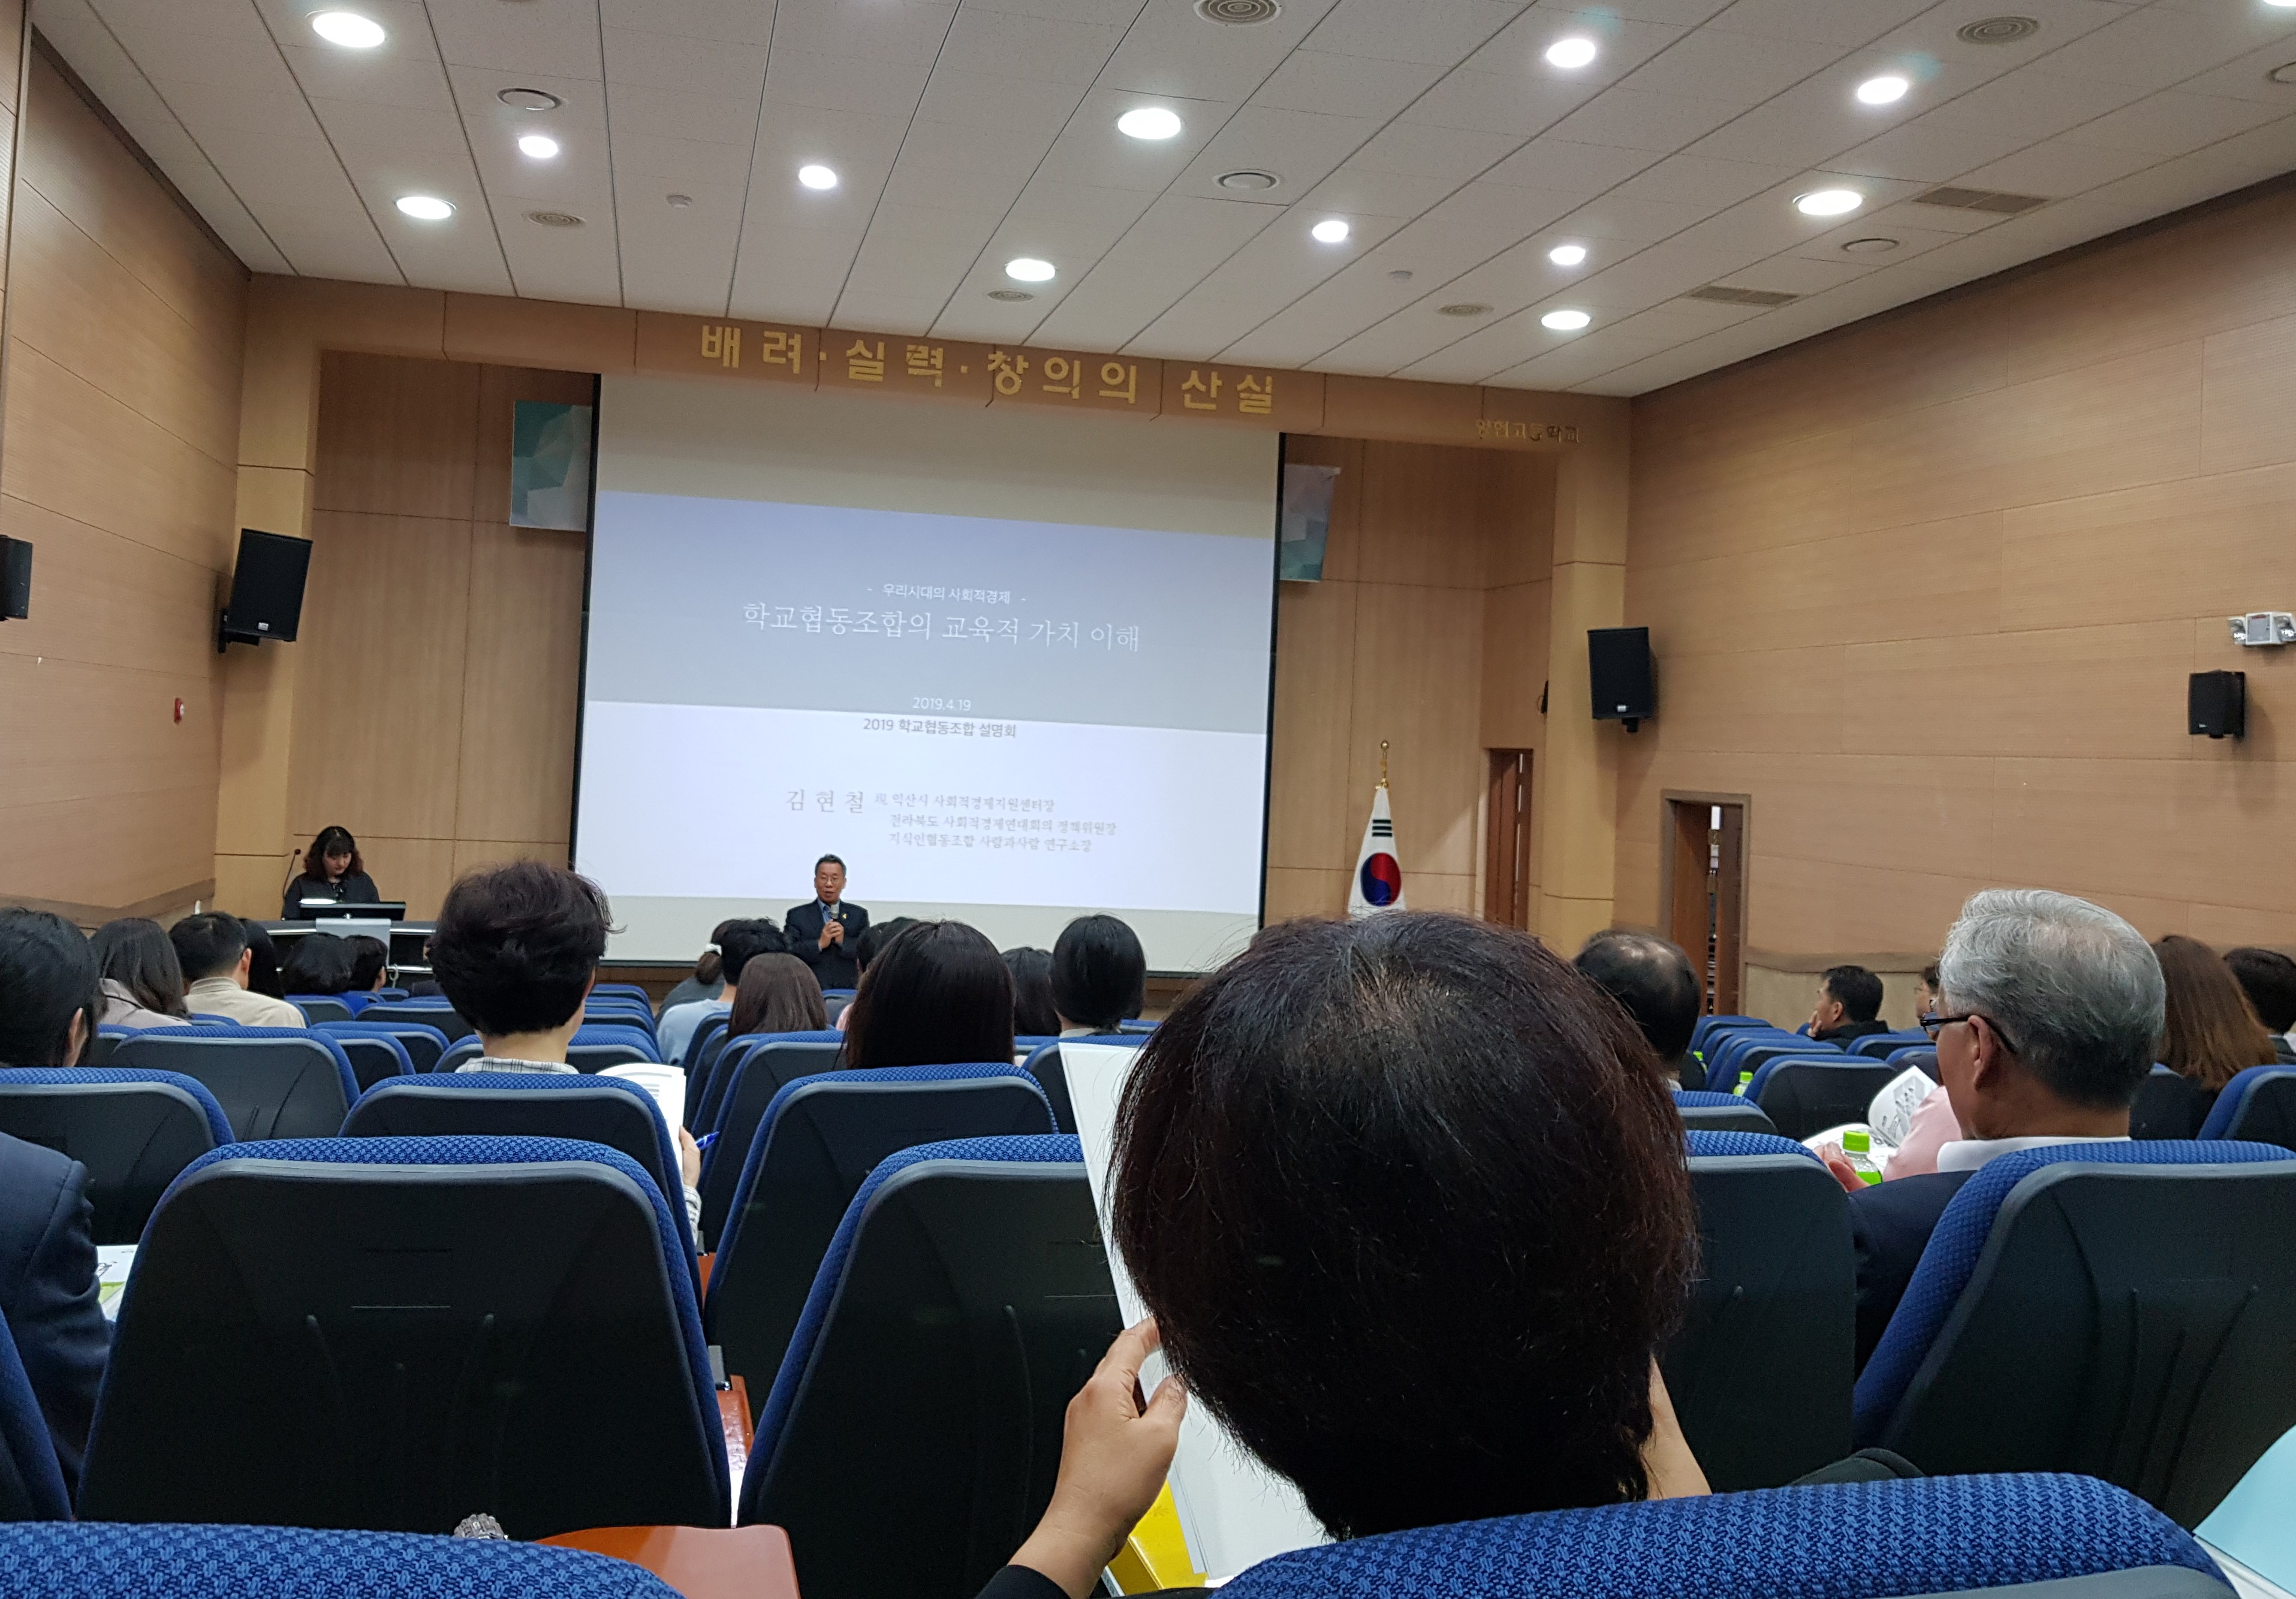 [협동조합이야기] 2019 학교협동조합 설명회 개최